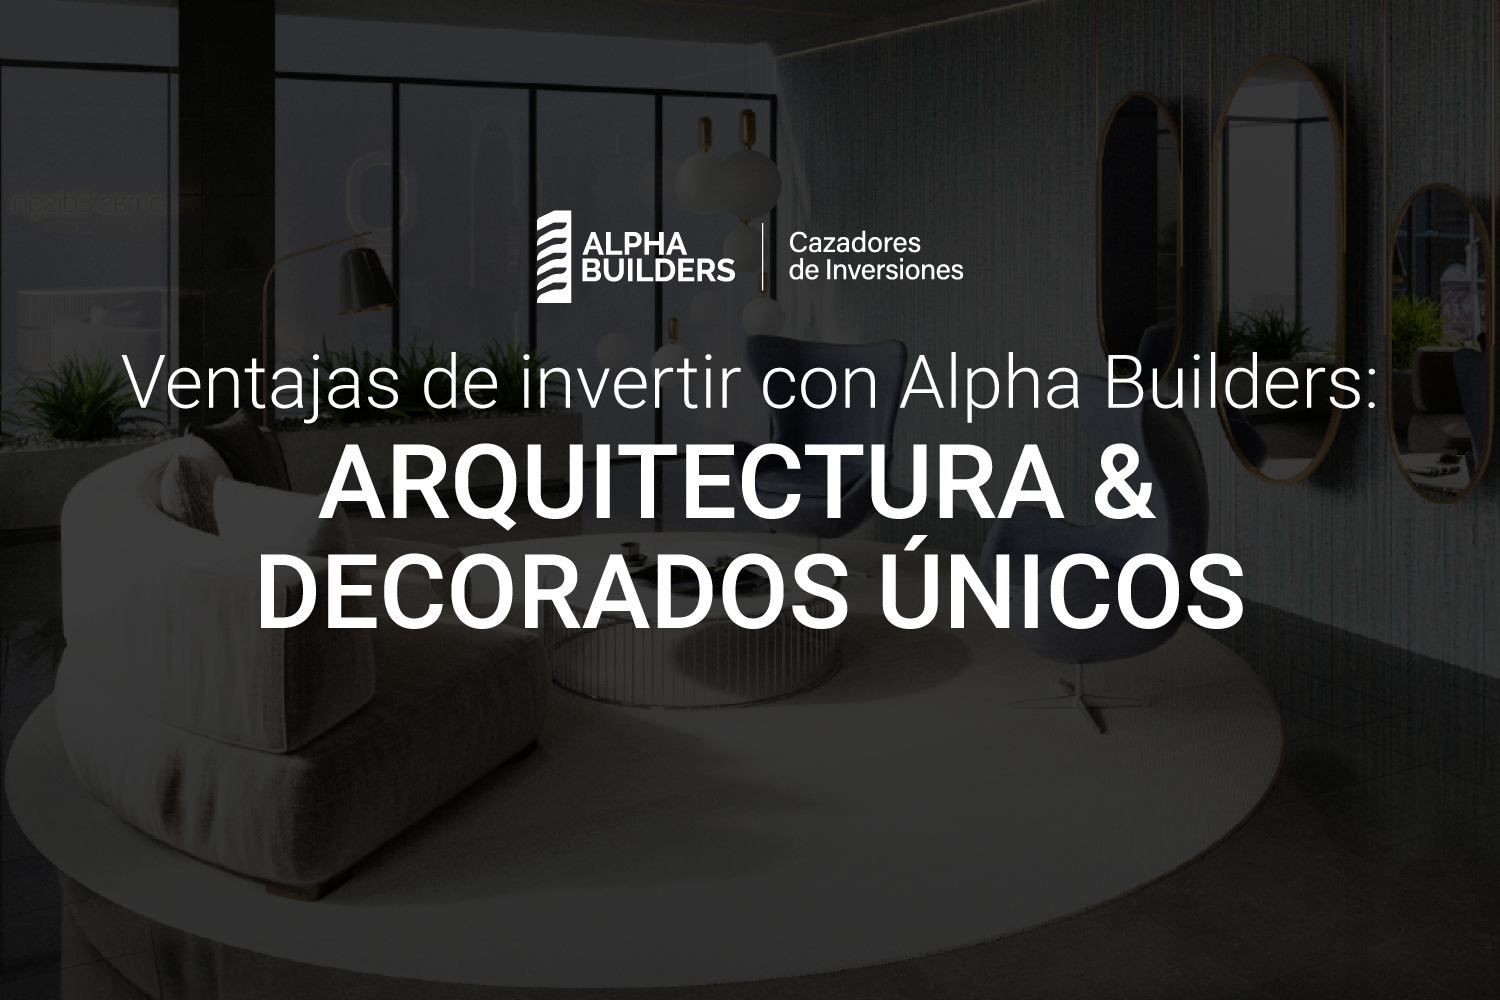 Ventajas de invertir con Alpha Builders: Arquitectura y decorados únicos